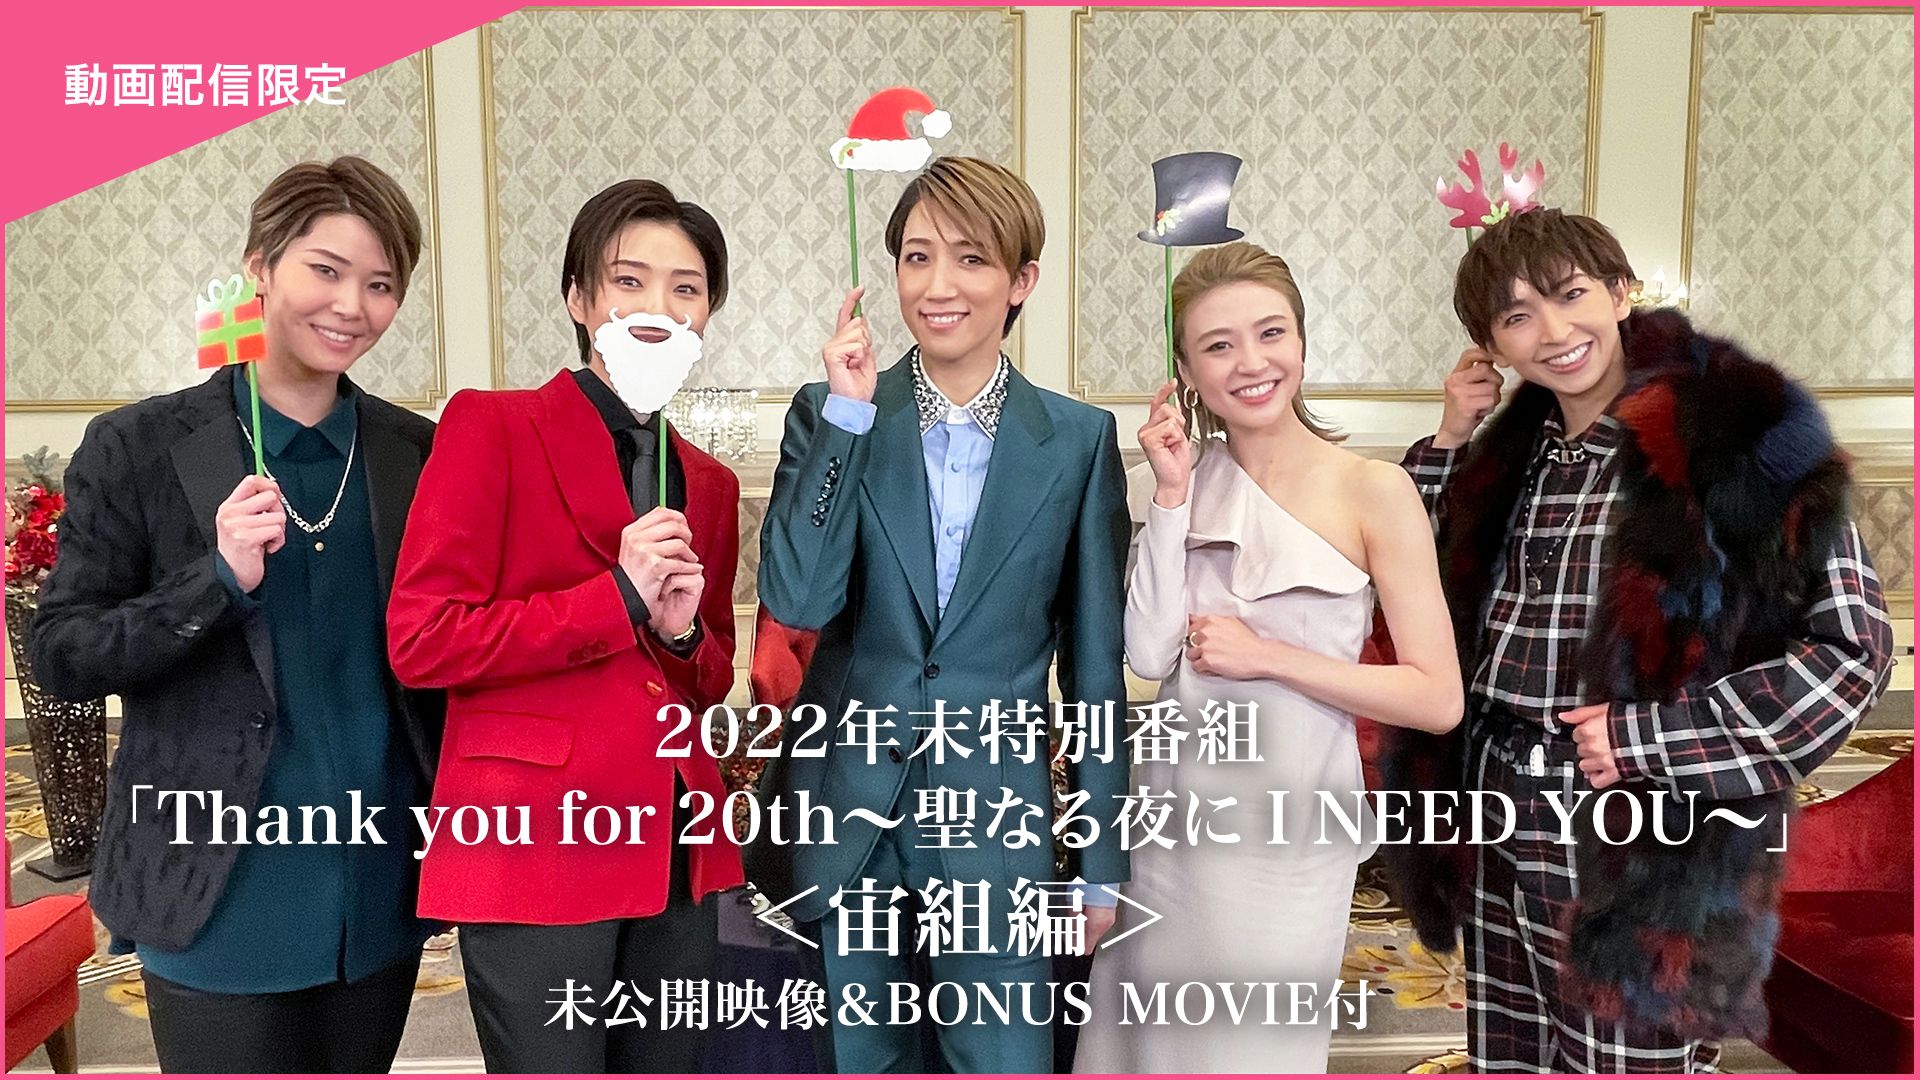 2022年末特別番組「Thank you for 20th〜聖なる夜に I NEED YOU〜」<宙組編>未公開映像&BONUS MOVIE付